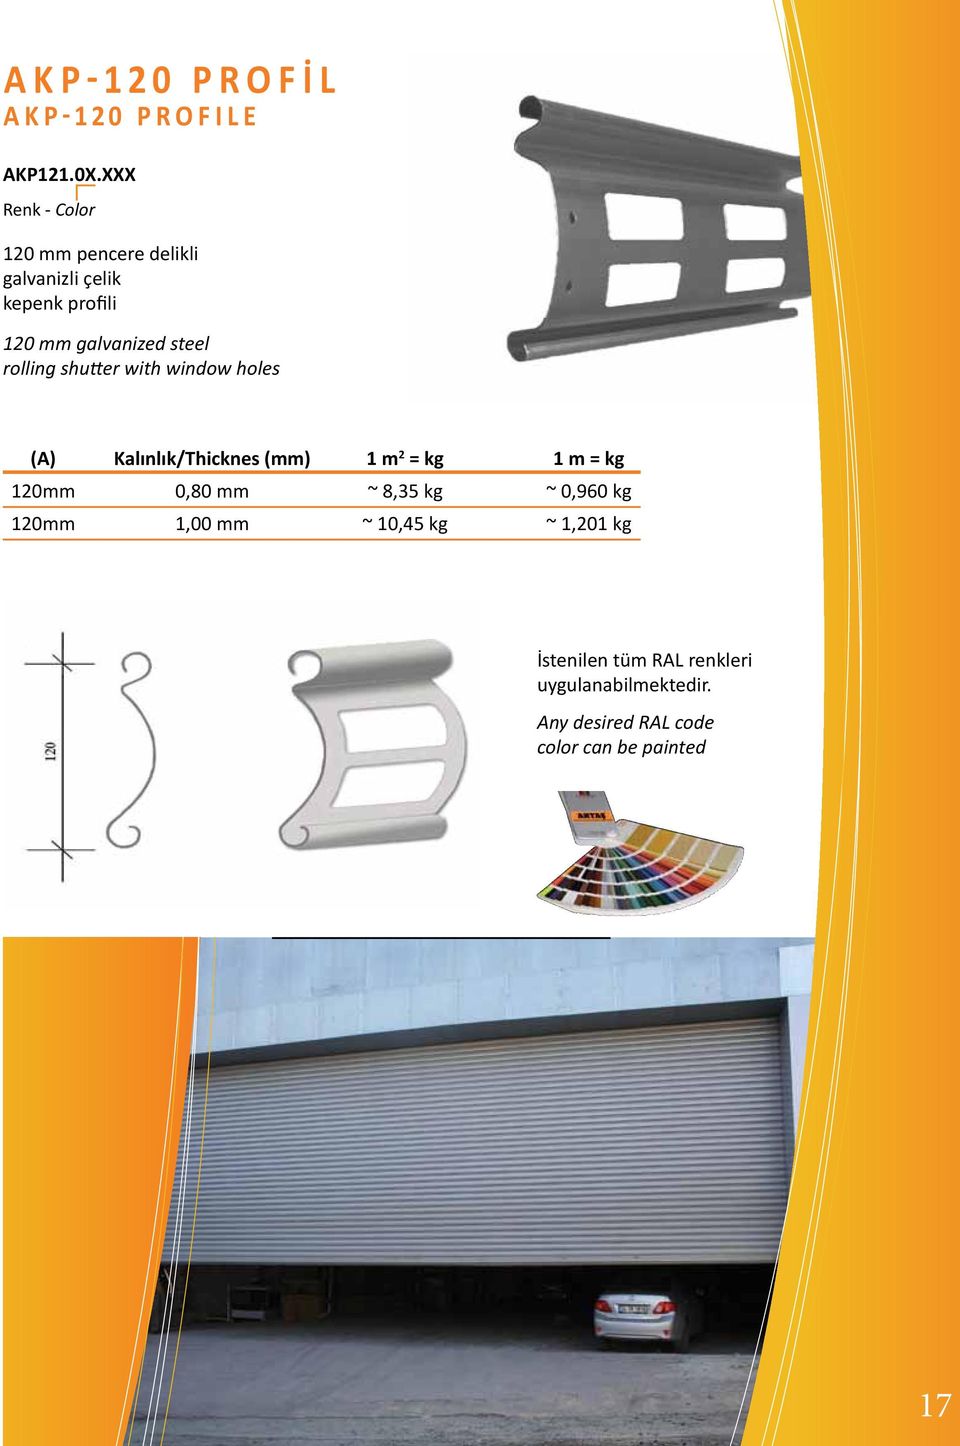 steel rolling shutter with window holes Kalınlık/Thicknes (mm) 1 m 2 = kg 1 m = kg 120mm 0,80